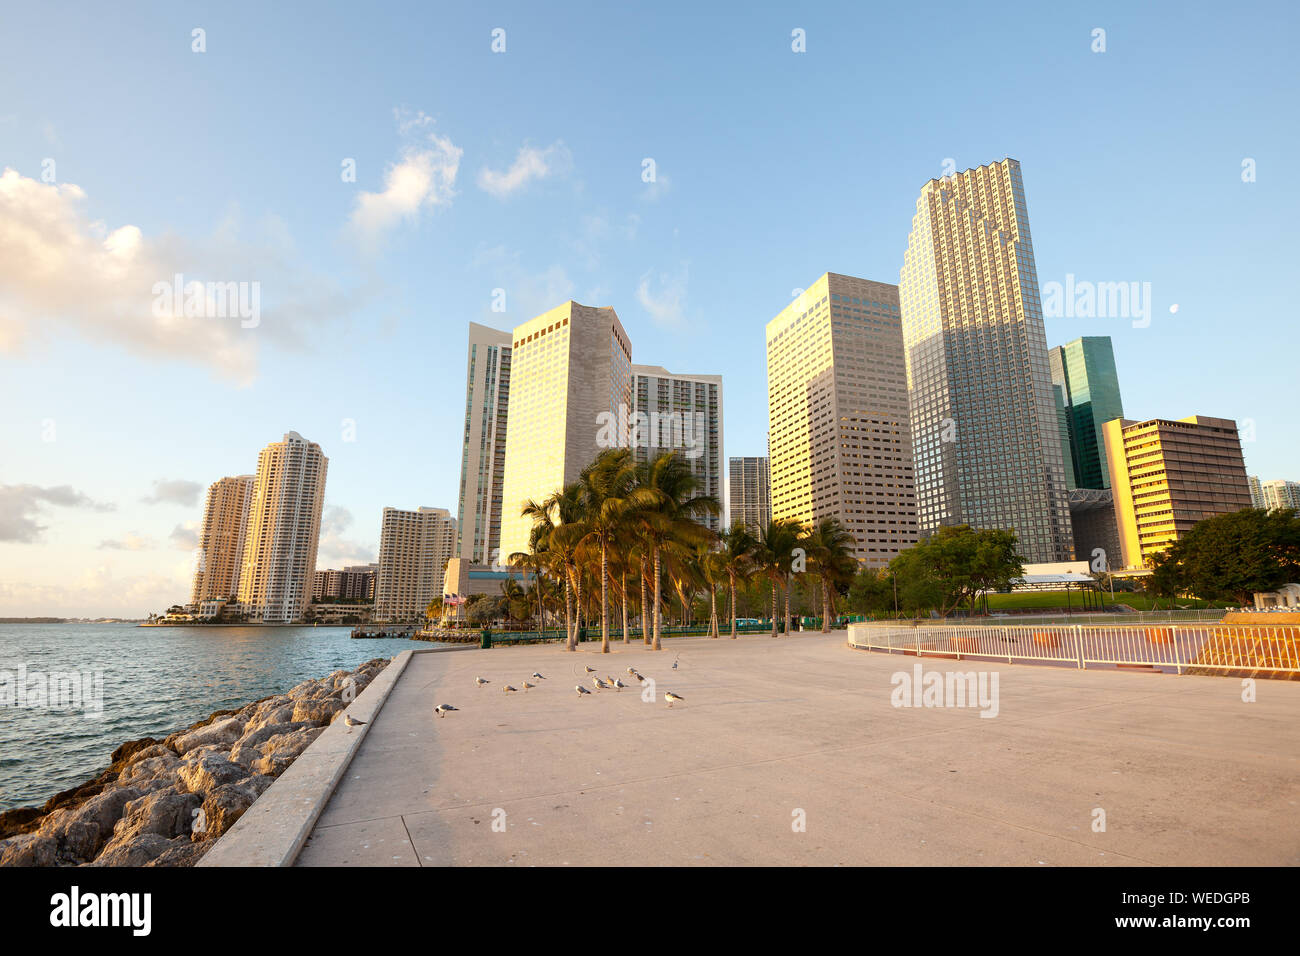 Bayfront Park and downtown skyline, Miami, Florida, USA Stock Photo